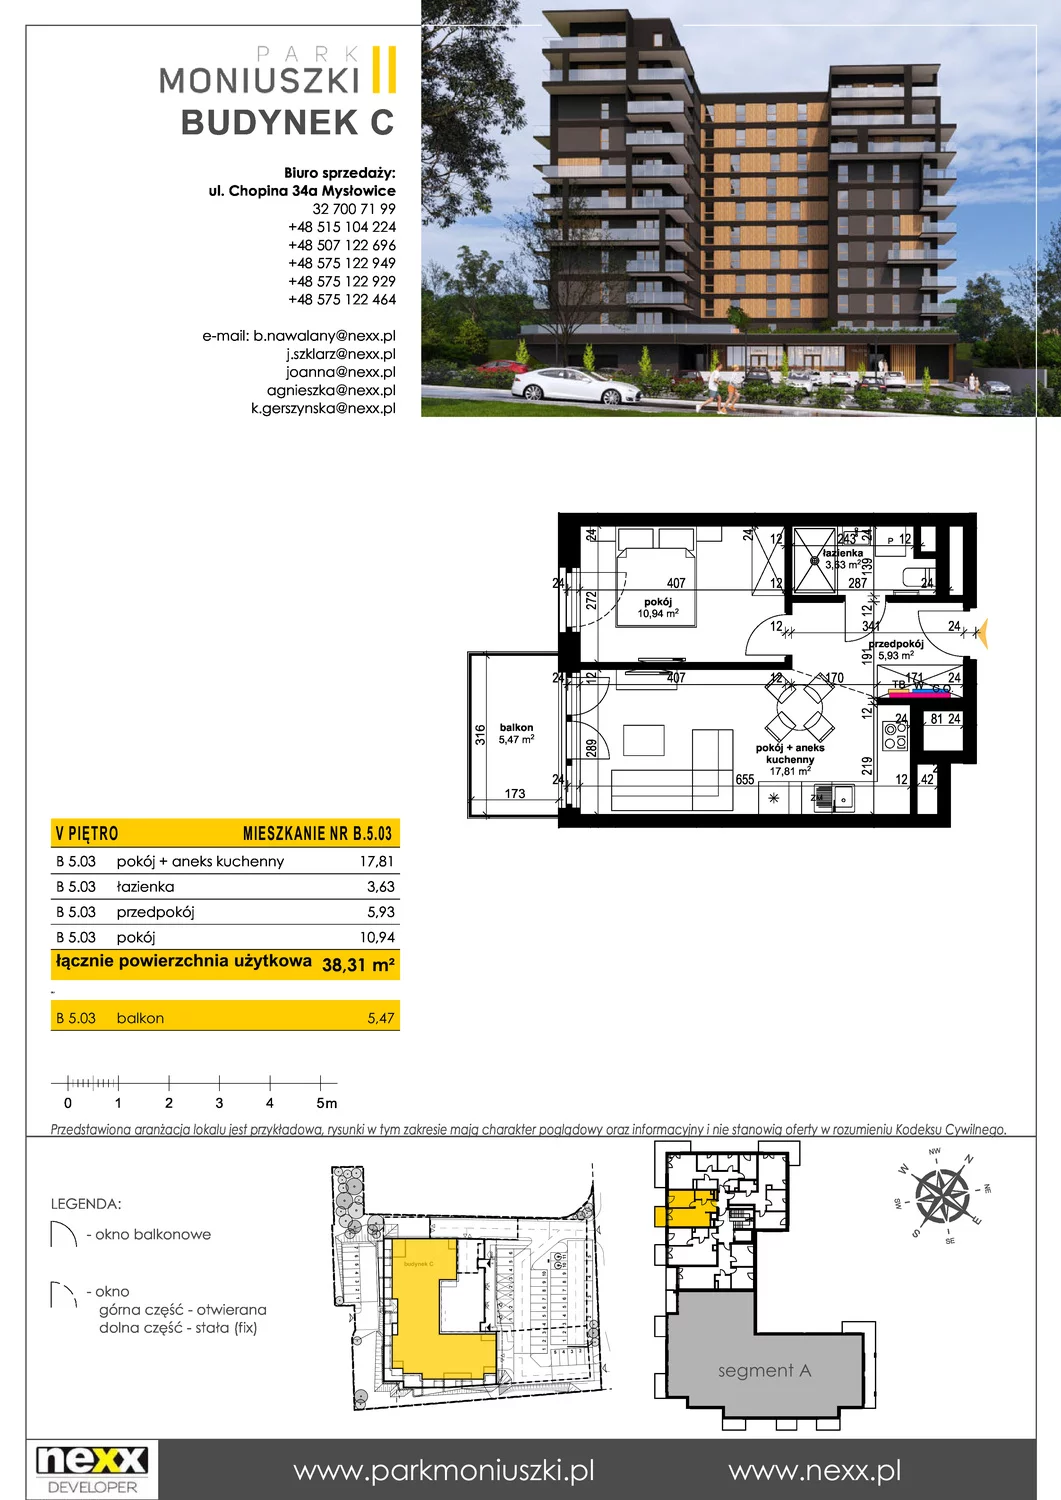 Mieszkanie 38,31 m², piętro 5, oferta nr B 5.03, Osiedle Park Moniuszki, Mysłowice, ul. Okrzei / Wielka Skotnica